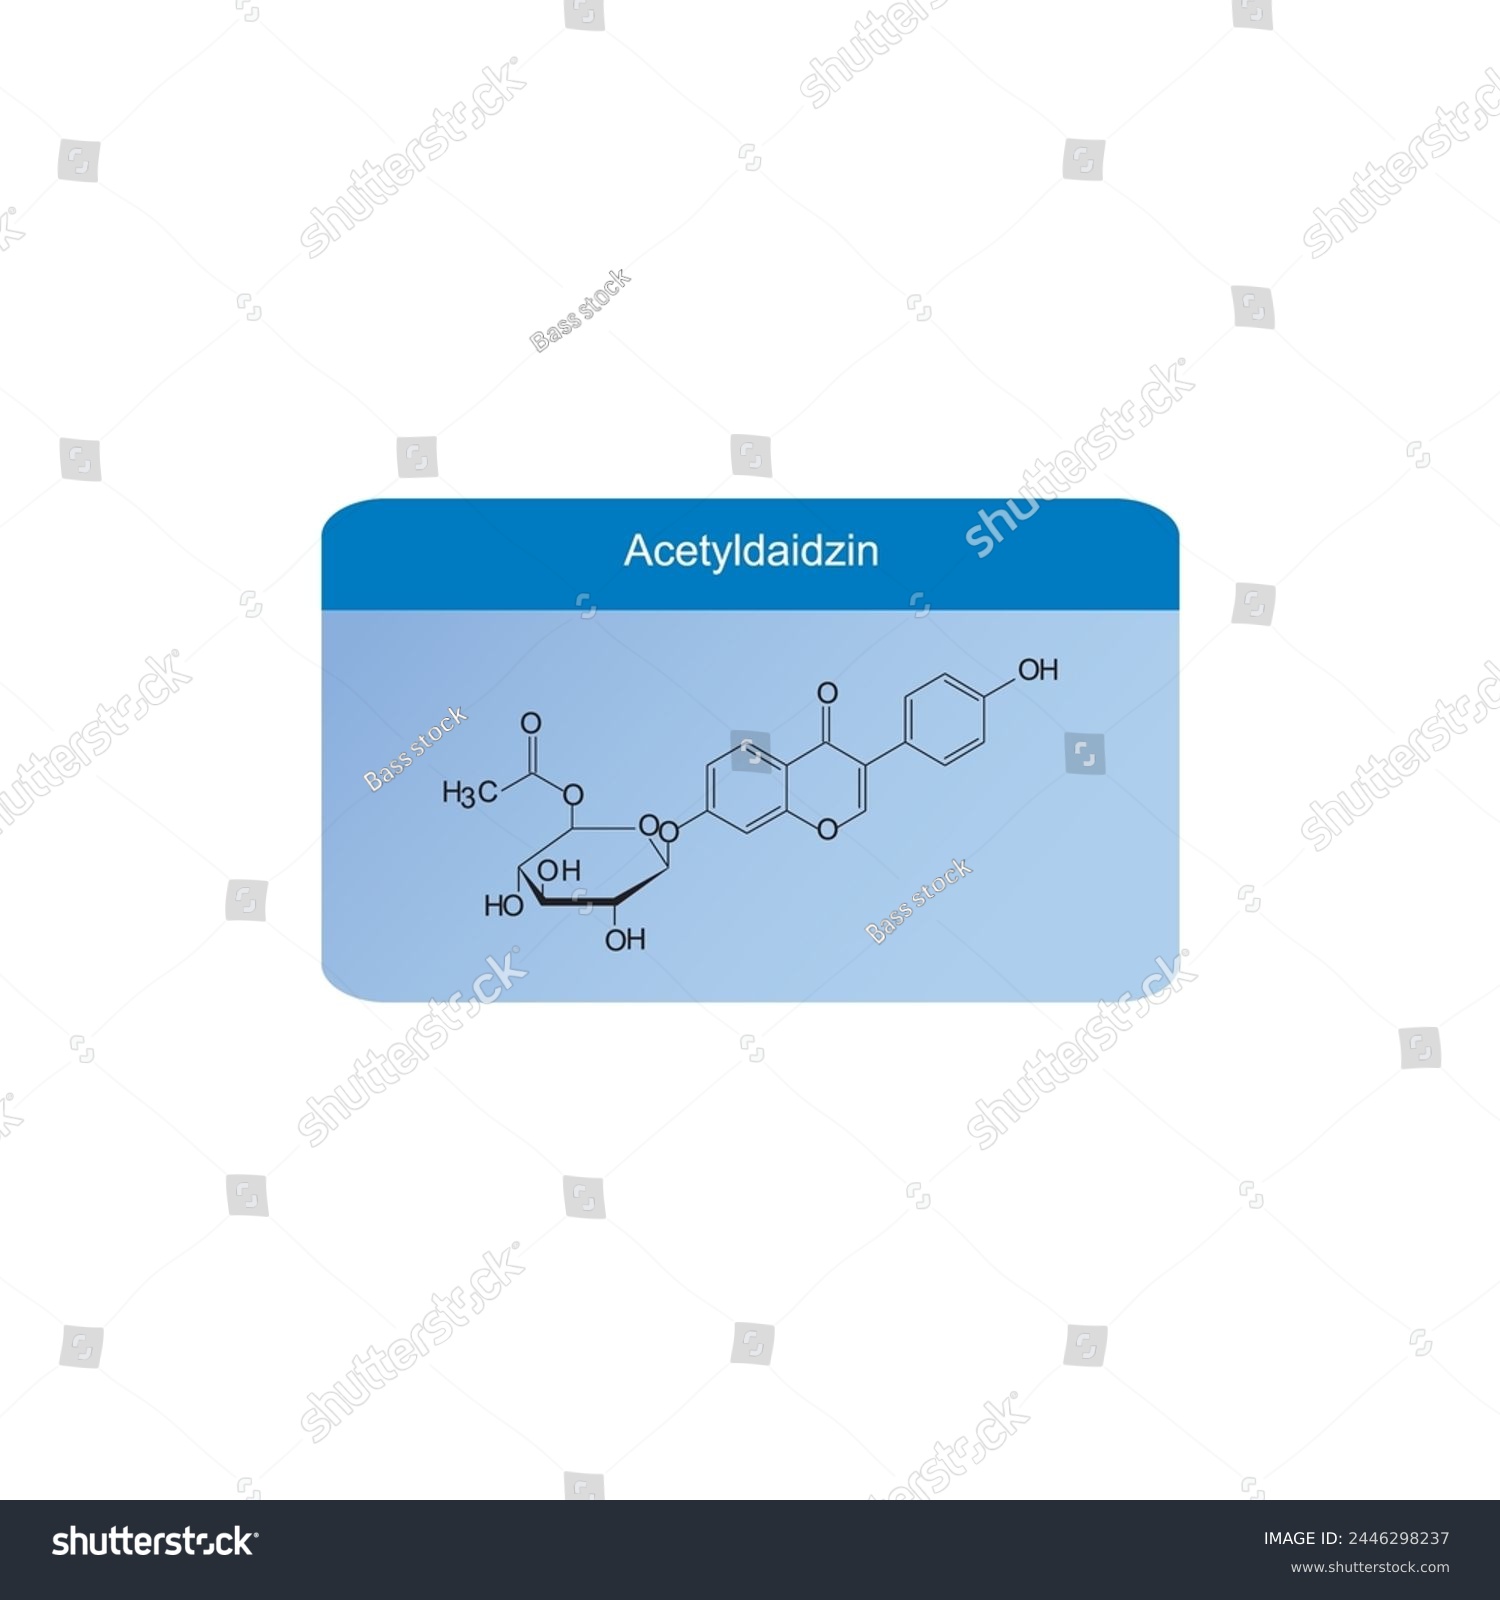 SVG of Acetyldaidzin skeletal structure diagram.Isoflavanone compound molecule scientific illustration on blue background. svg